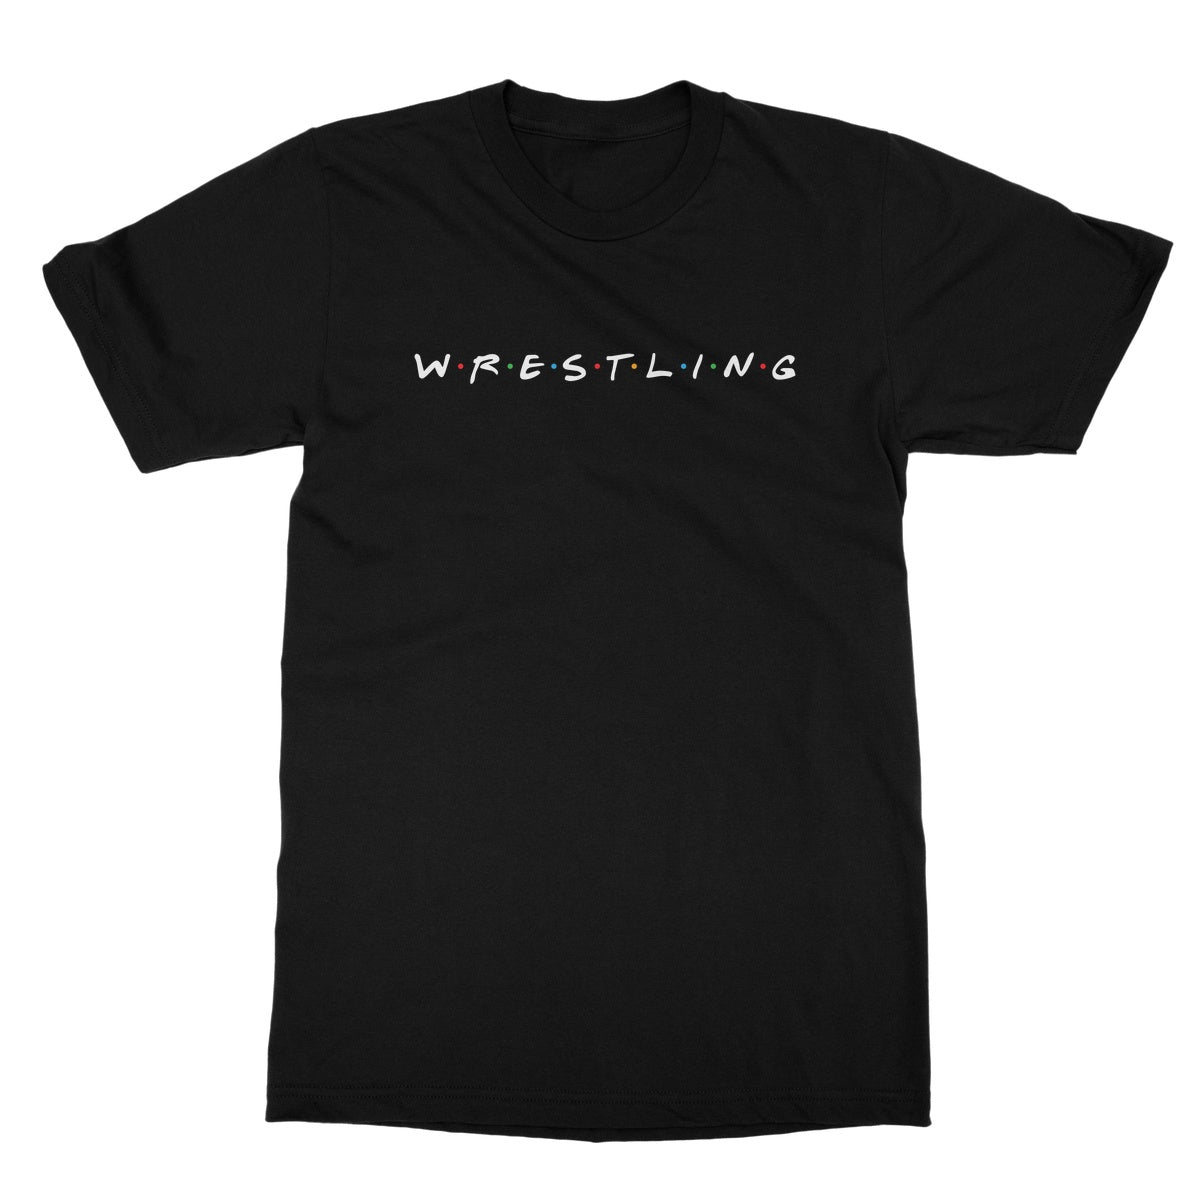 Let's Wrestle W-R-E-S-T-L-I-N-G Softstyle T-Shirt